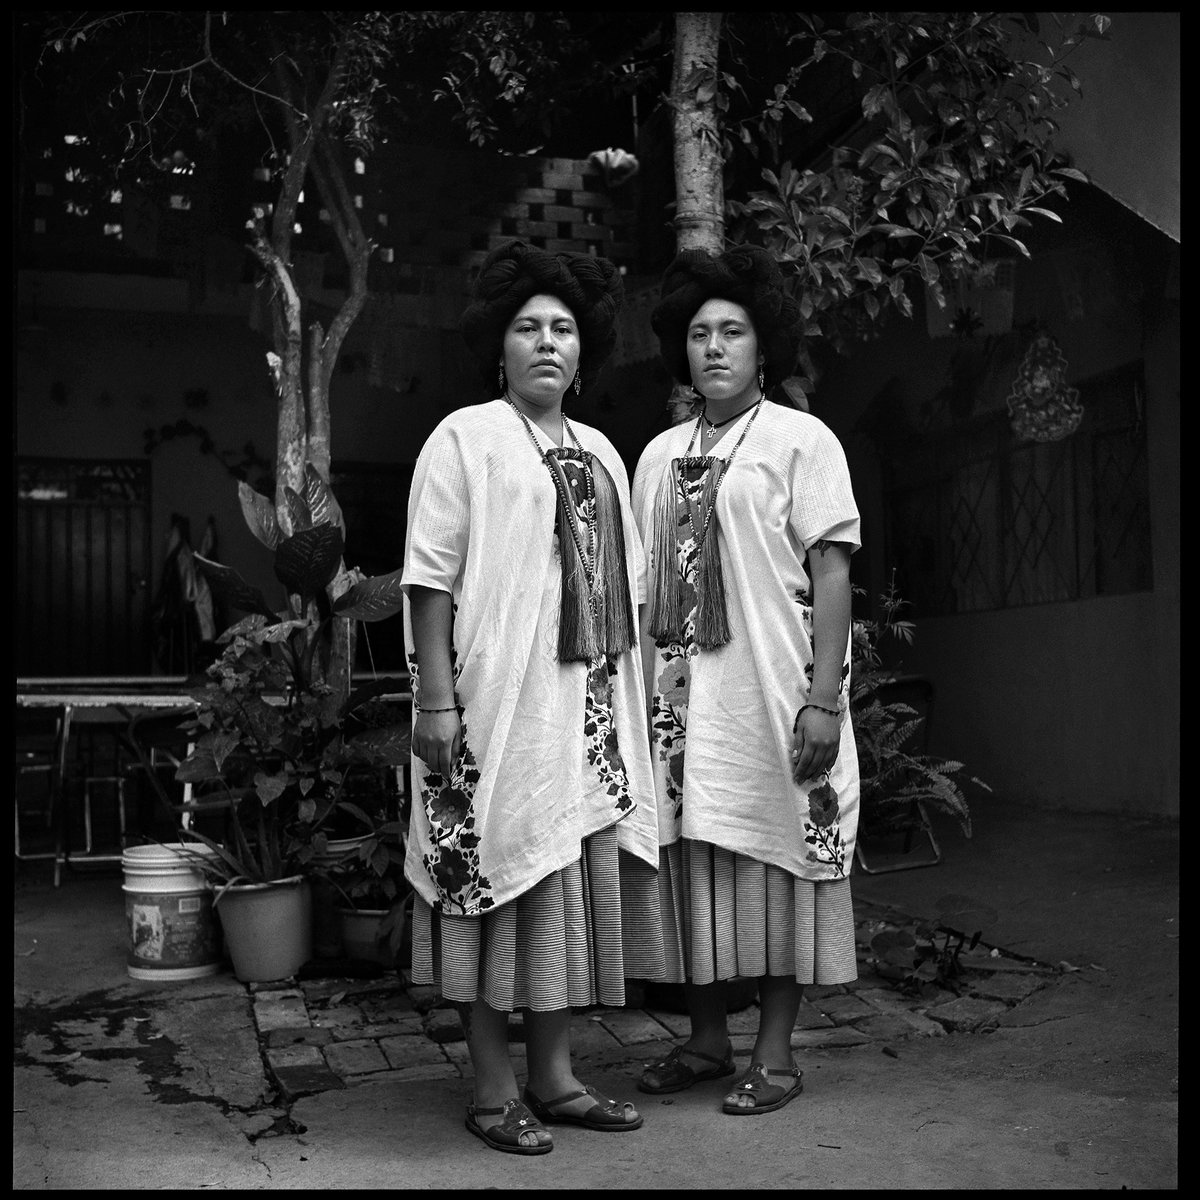 Prepárate para conocer 'What we see', un libro que presenta el trabajo de 100 mujeres y fotógrafas documentales no binarias a lo largo de 50 años de historia fotográfica. 
@womenphotograph 

📆Jueves 29 de junio, 19 h | Centro de la Imagen